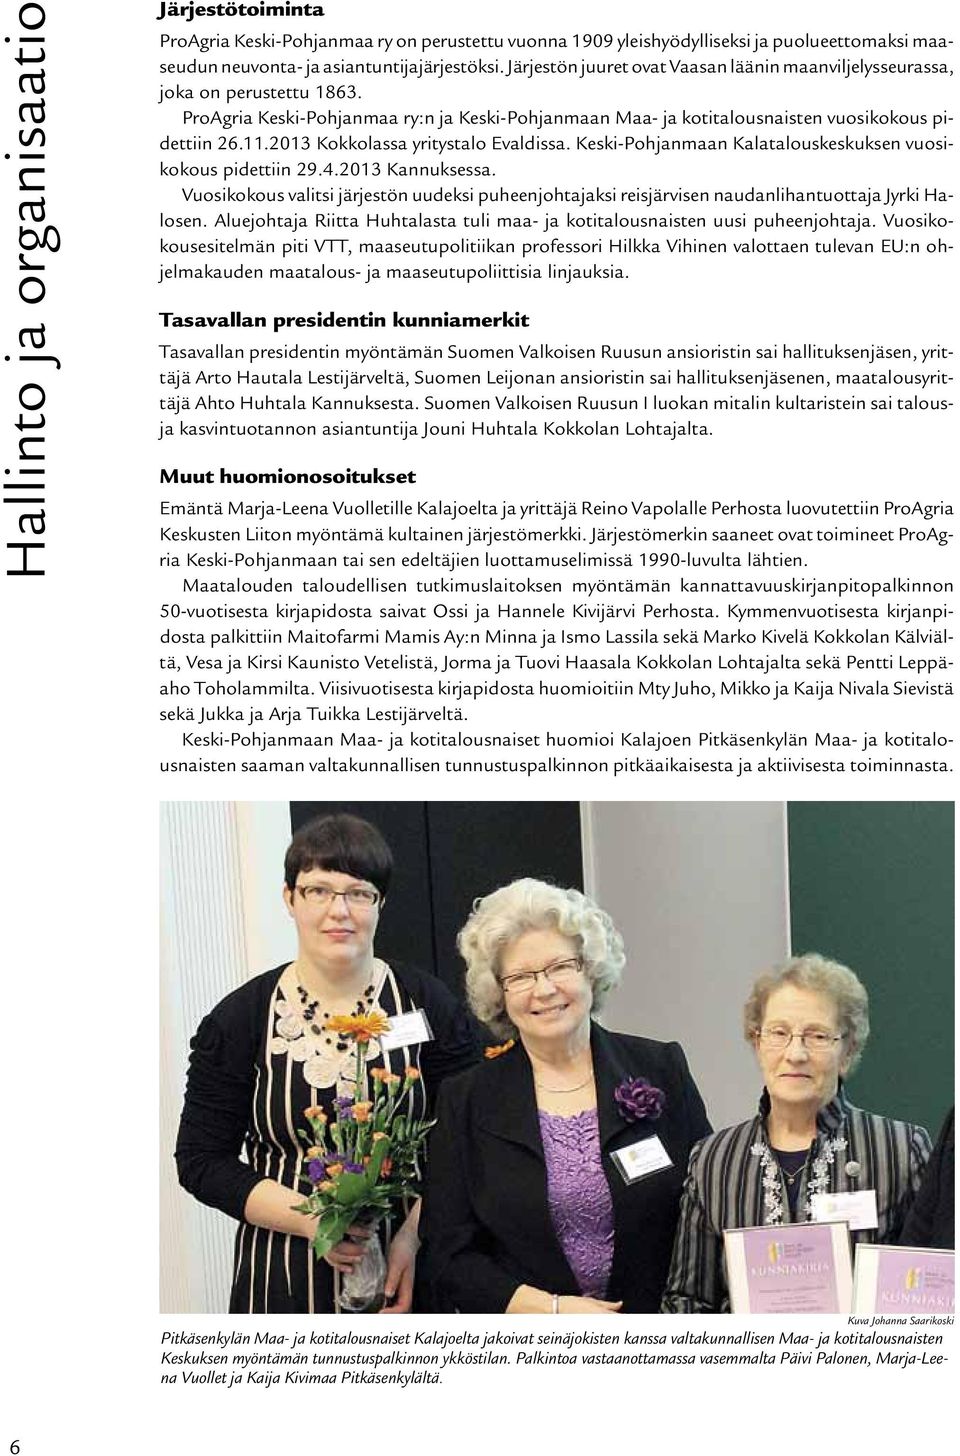 2013 Kokkolassa yritystalo Evaldissa. Keski-Pohjanmaan Kalatalouskeskuksen vuosikokous pidettiin 29.4.2013 Kannuksessa.